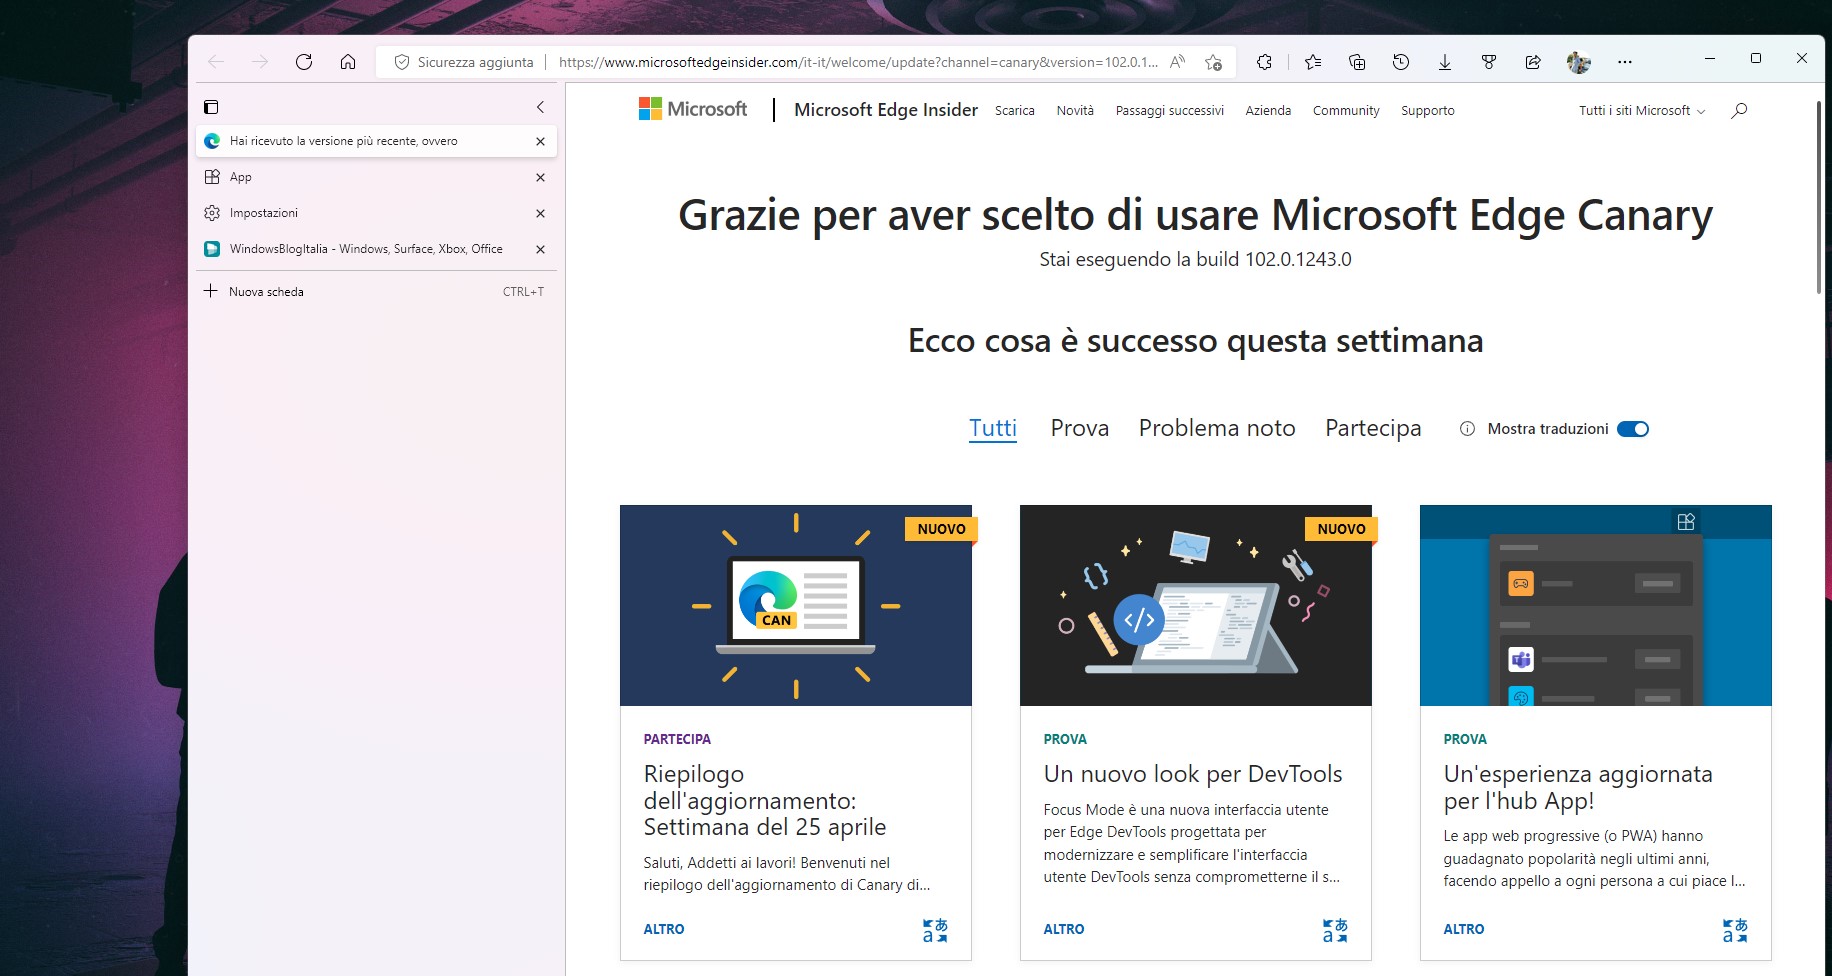 Microsoft Edge Canary - Effetto Mica per le schede verticali